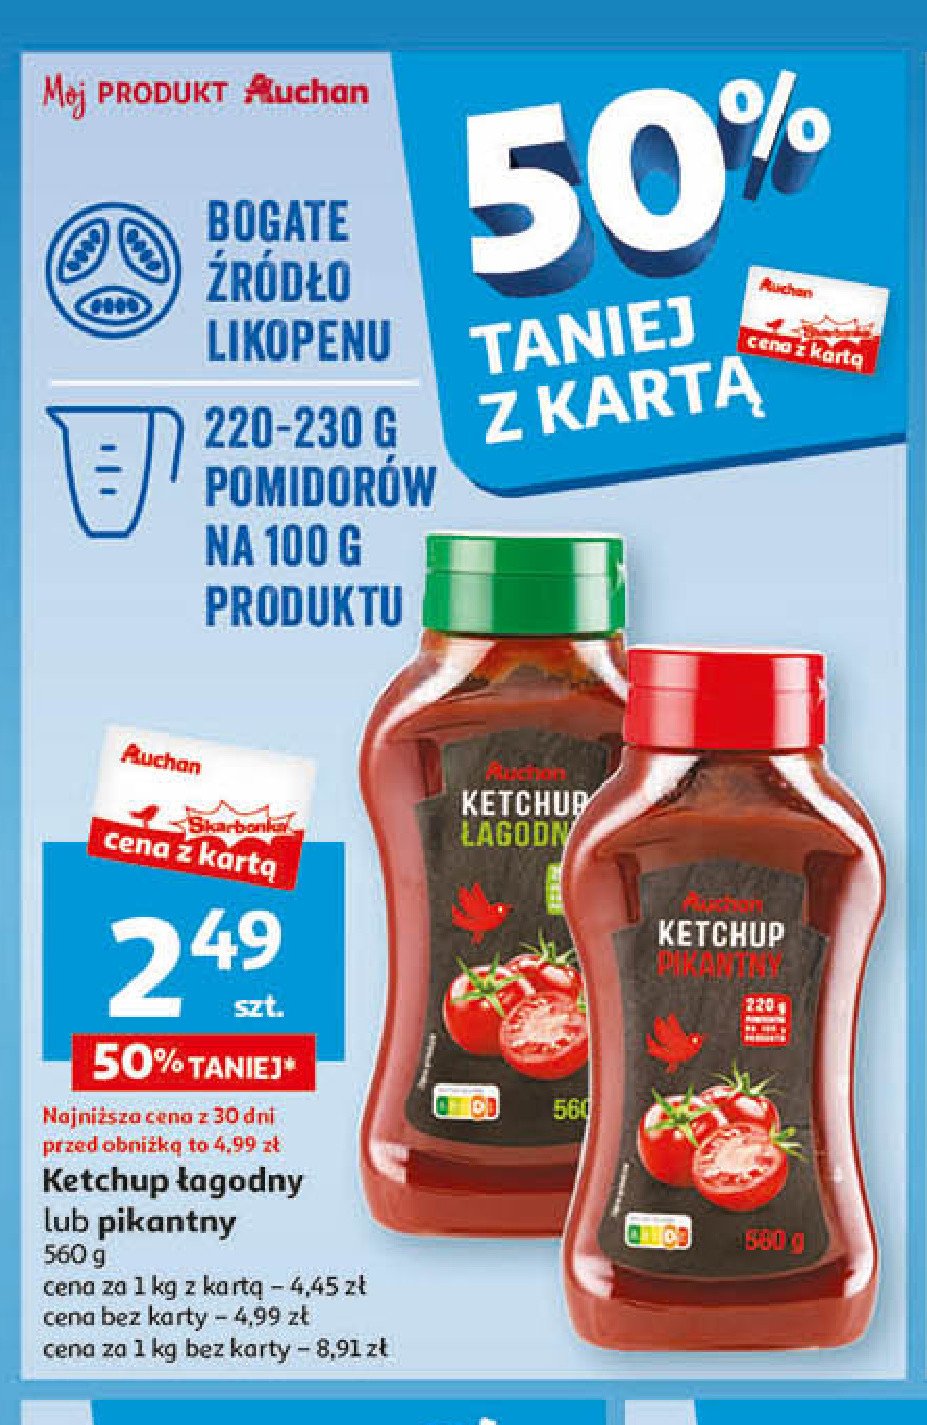 Ketchup pikatny Auchan różnorodne (logo czerwone) promocja